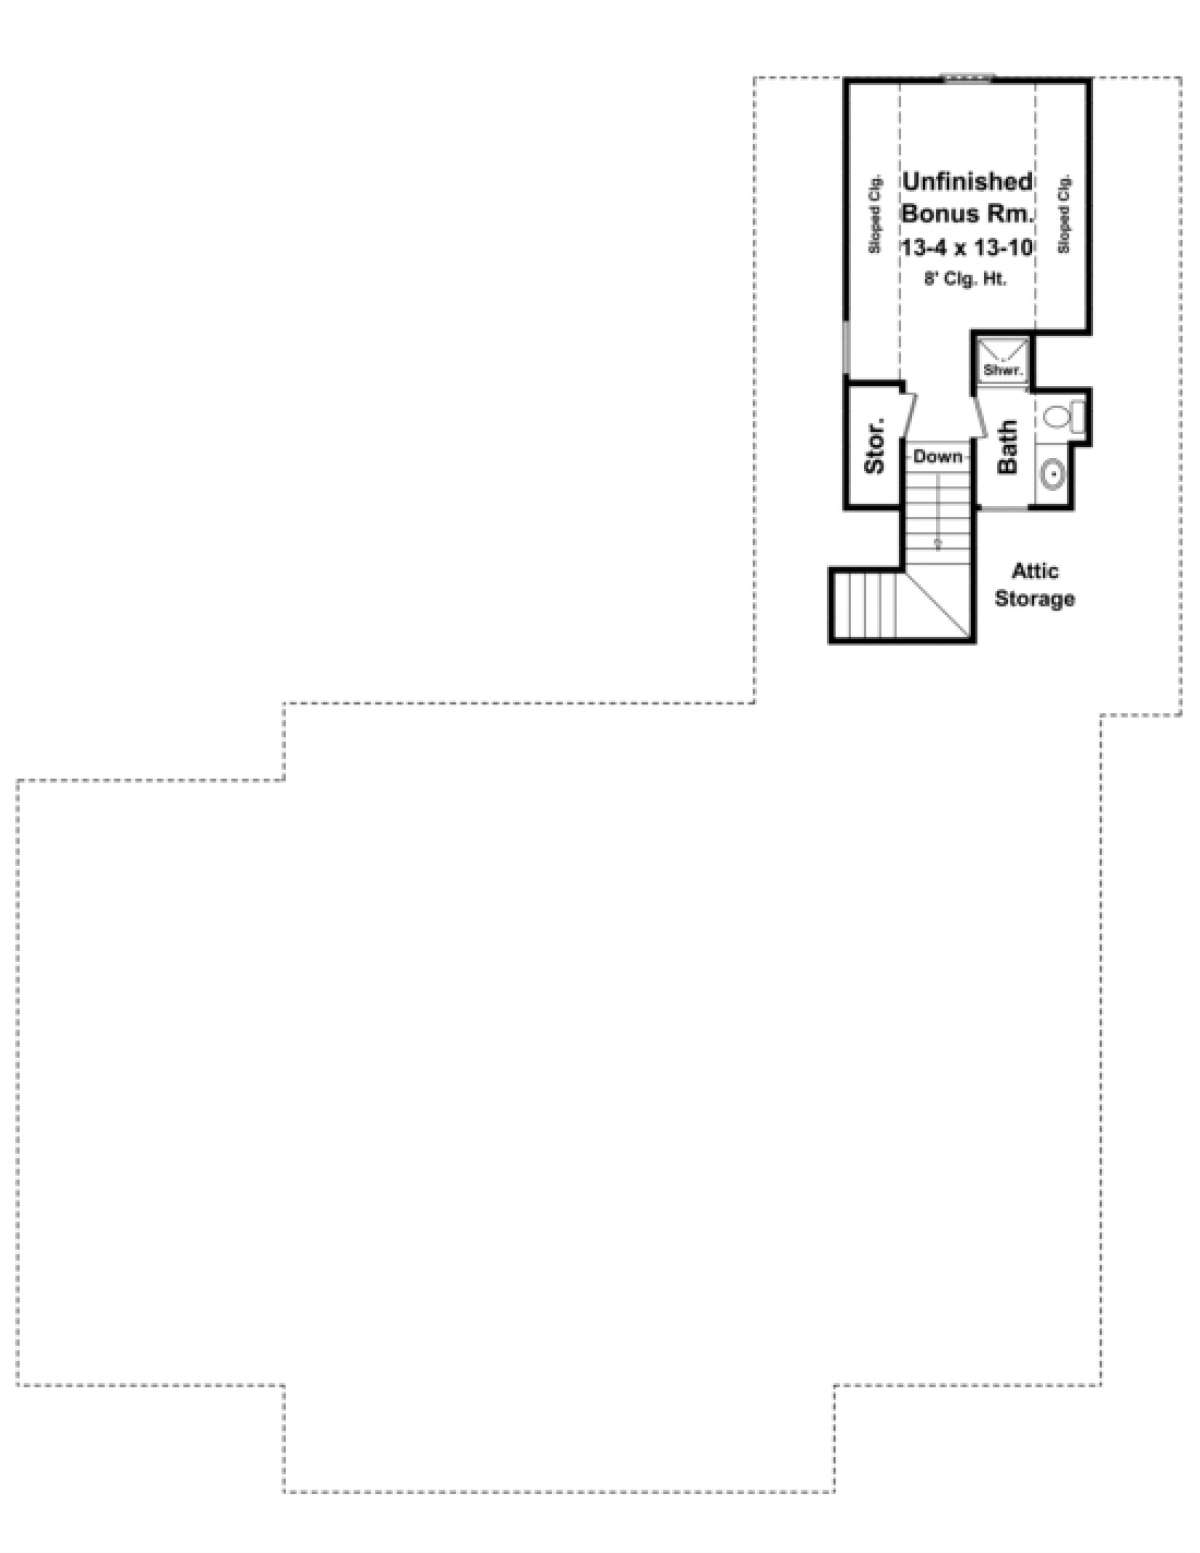 Bonus Room for House Plan #348-00186